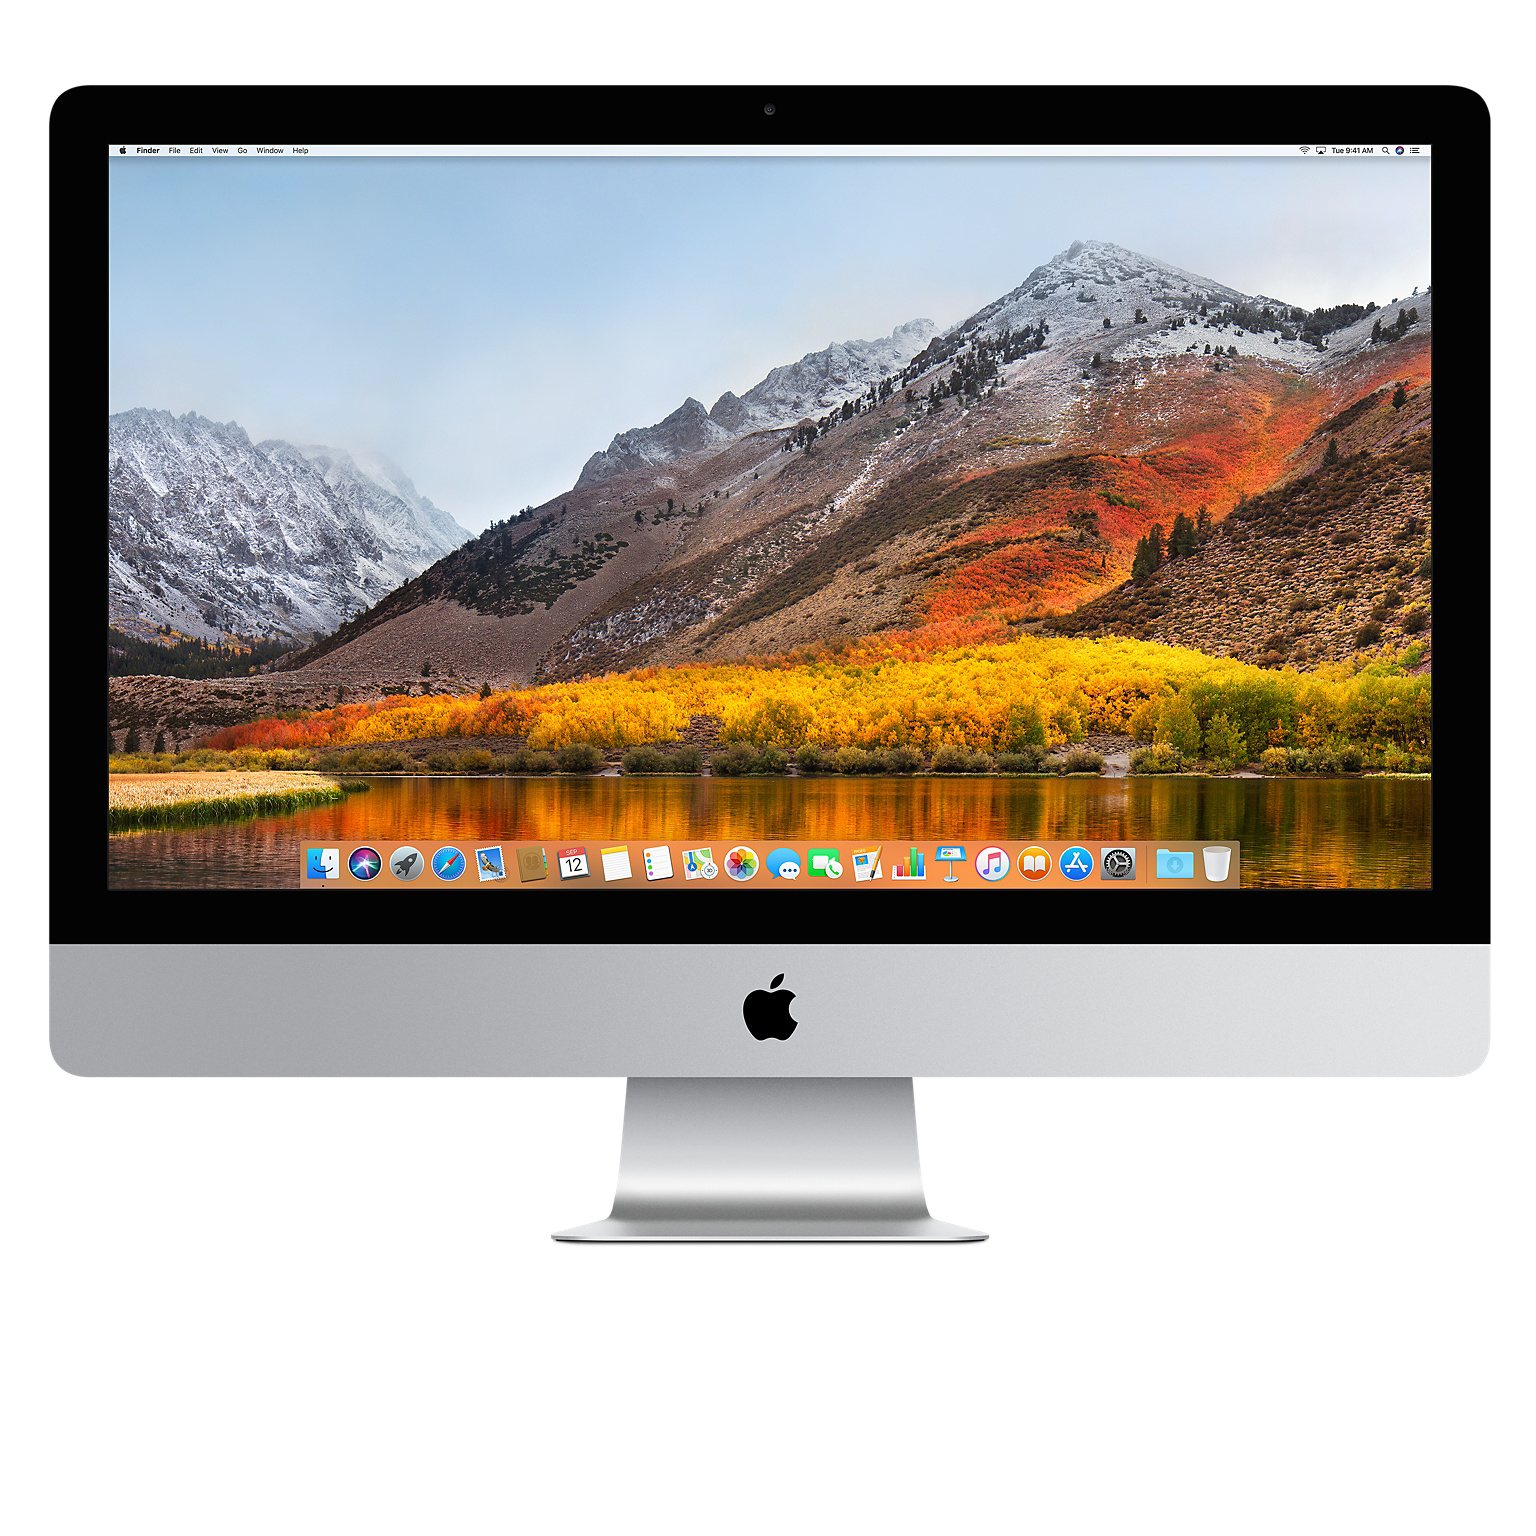 2024得価iMac (Retina 5k， 27-inch， Late 2015) Macデスクトップ